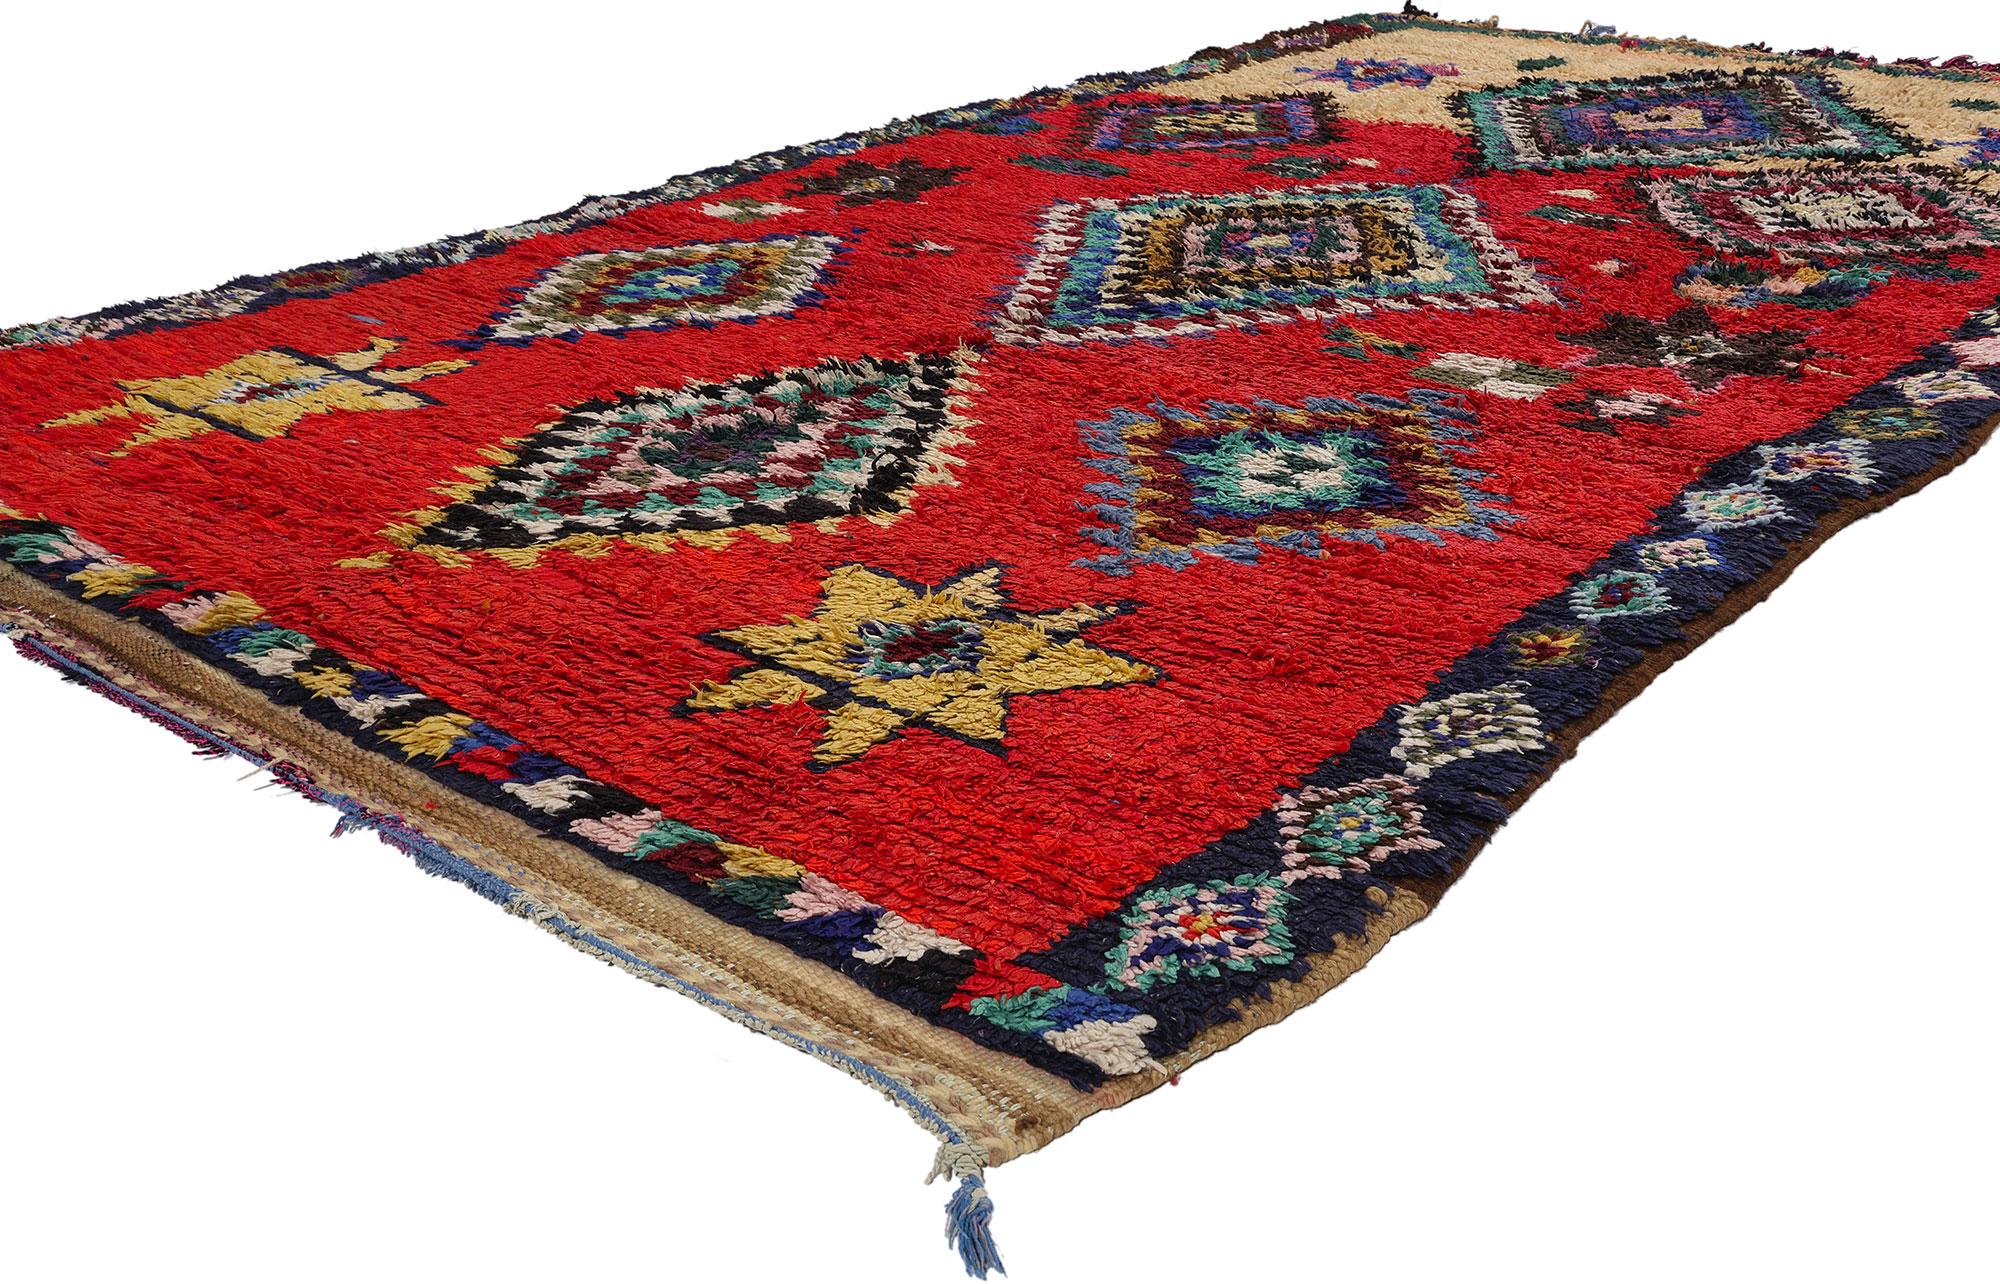 21795 Marokkanischer Teppich Vintage Red Boujad, 05'01 x 09'05. Boujad-Teppiche aus der Region Boujad im Mittleren Atlasgebirge in Marokko sind handgewebte Schätze voller Tradition. Diese Teppiche, die von erfahrenen Berberstämmen, insbesondere den